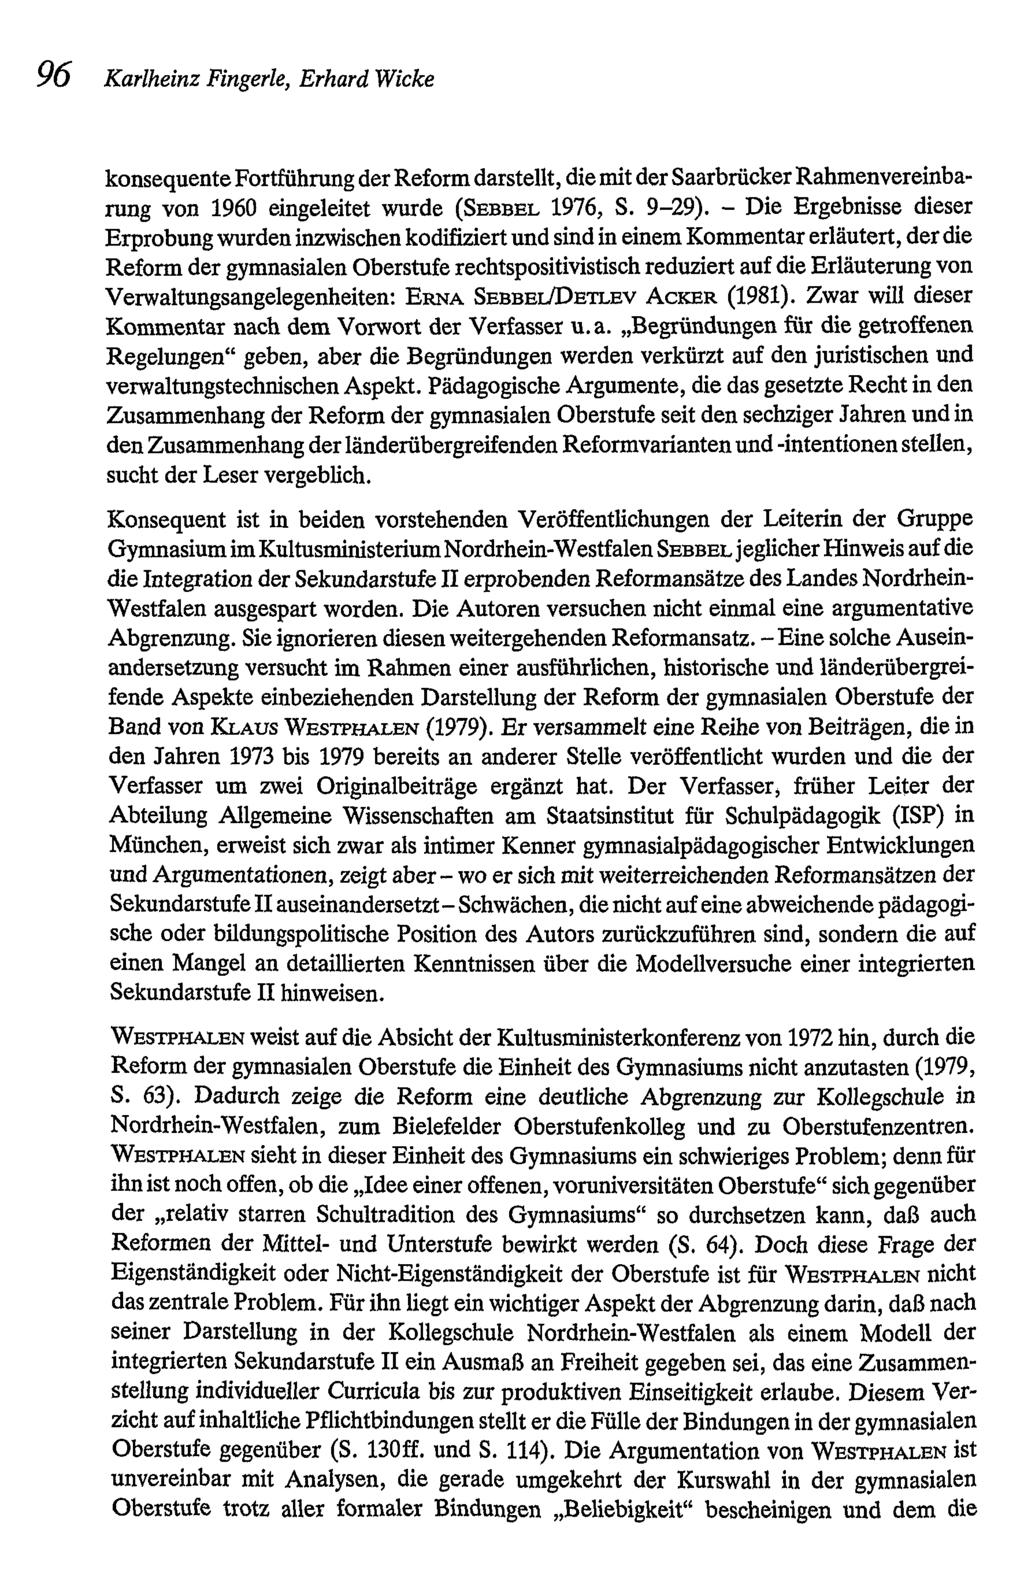 96 Karlheinz Fingerle, Erhard Wicke konsequente Fortführung der Reformdarstellt, die mit der SaarbrückerRahmenvereinbarung von 1960 eingeleitet wurde (SEBBEL 1976, S. 9-29).